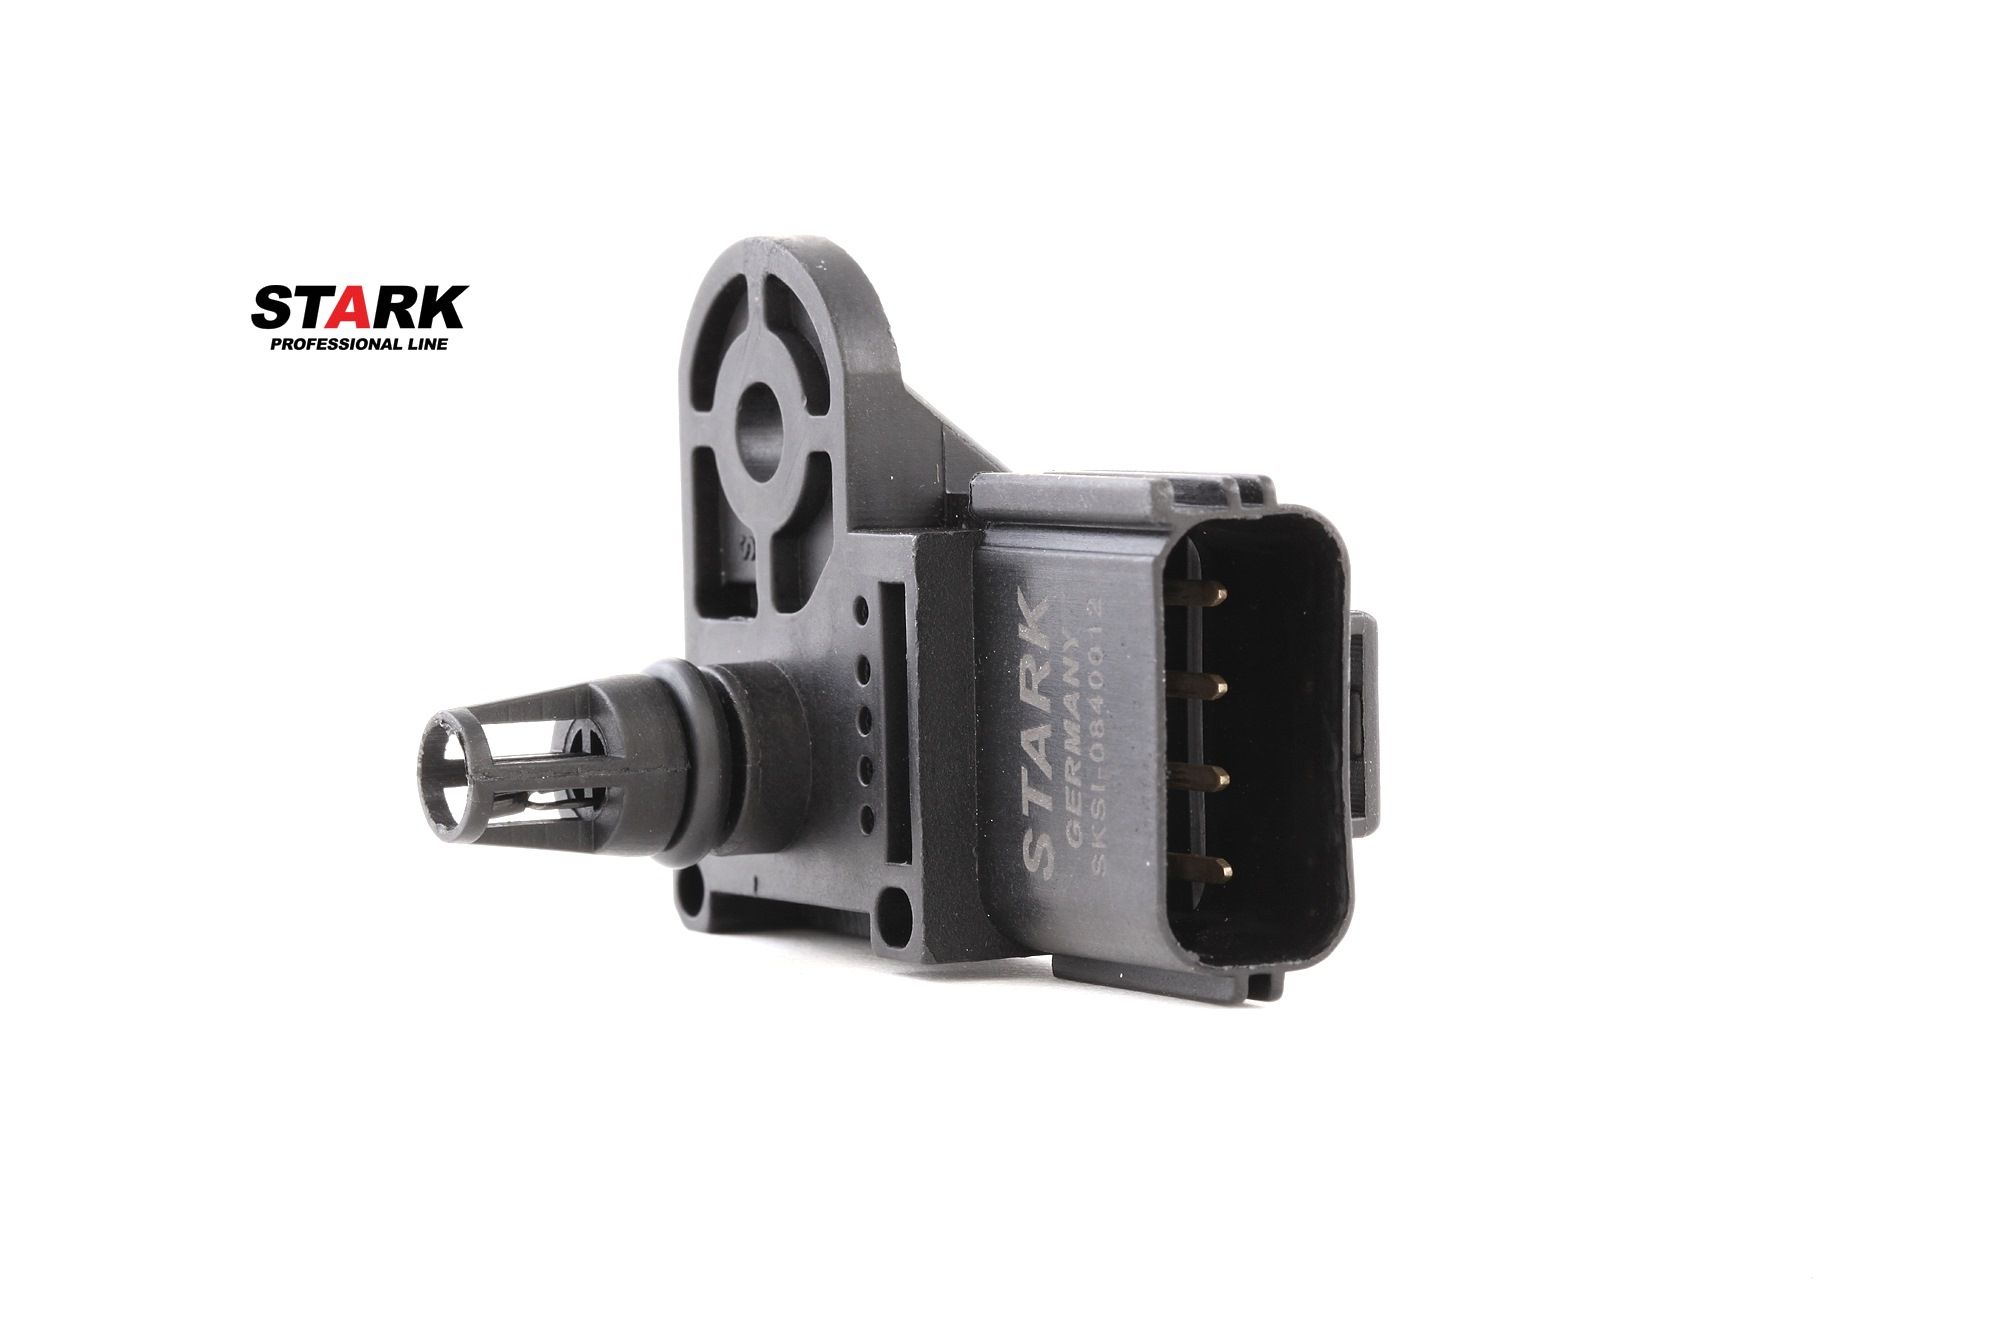 STARK SKSI-0840012 Intake manifold pressure sensor with integrated air temperature sensor